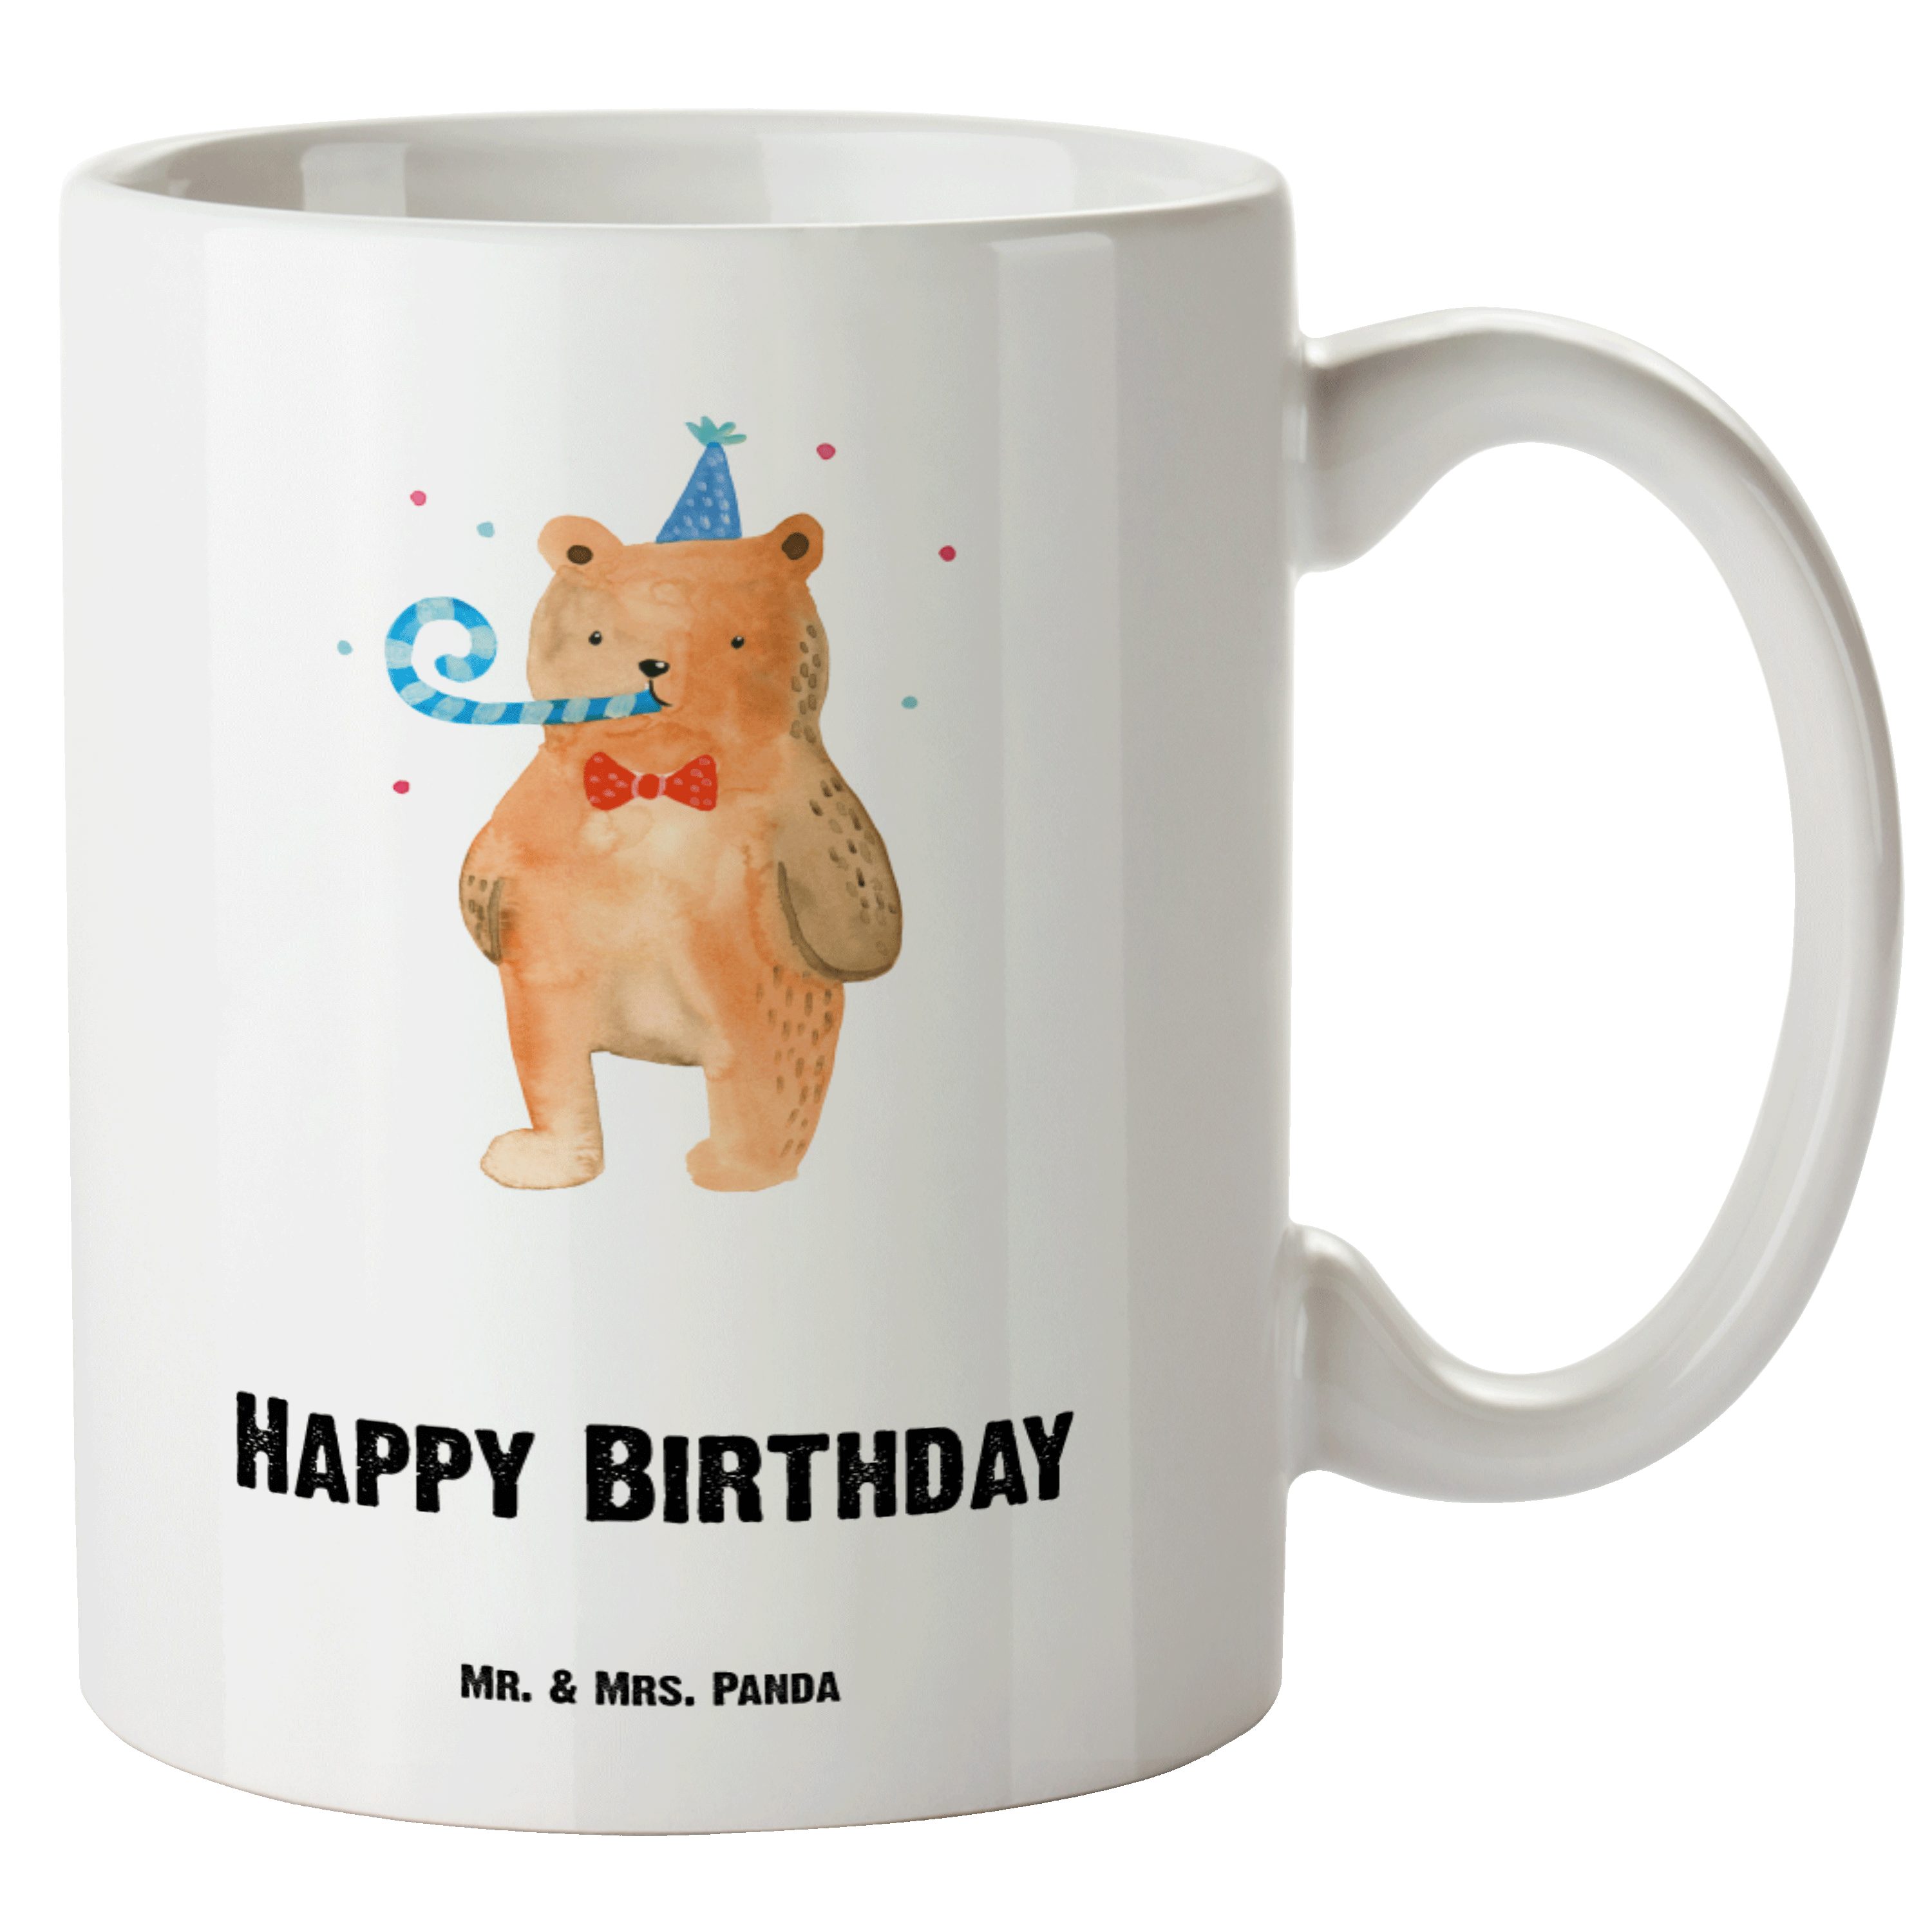 Mr. & Mrs. Panda Tasse Birthday Bär - Weiß - Geschenk, Geburtstag, XL Becher, Teddy, Glückwu, XL Tasse Keramik